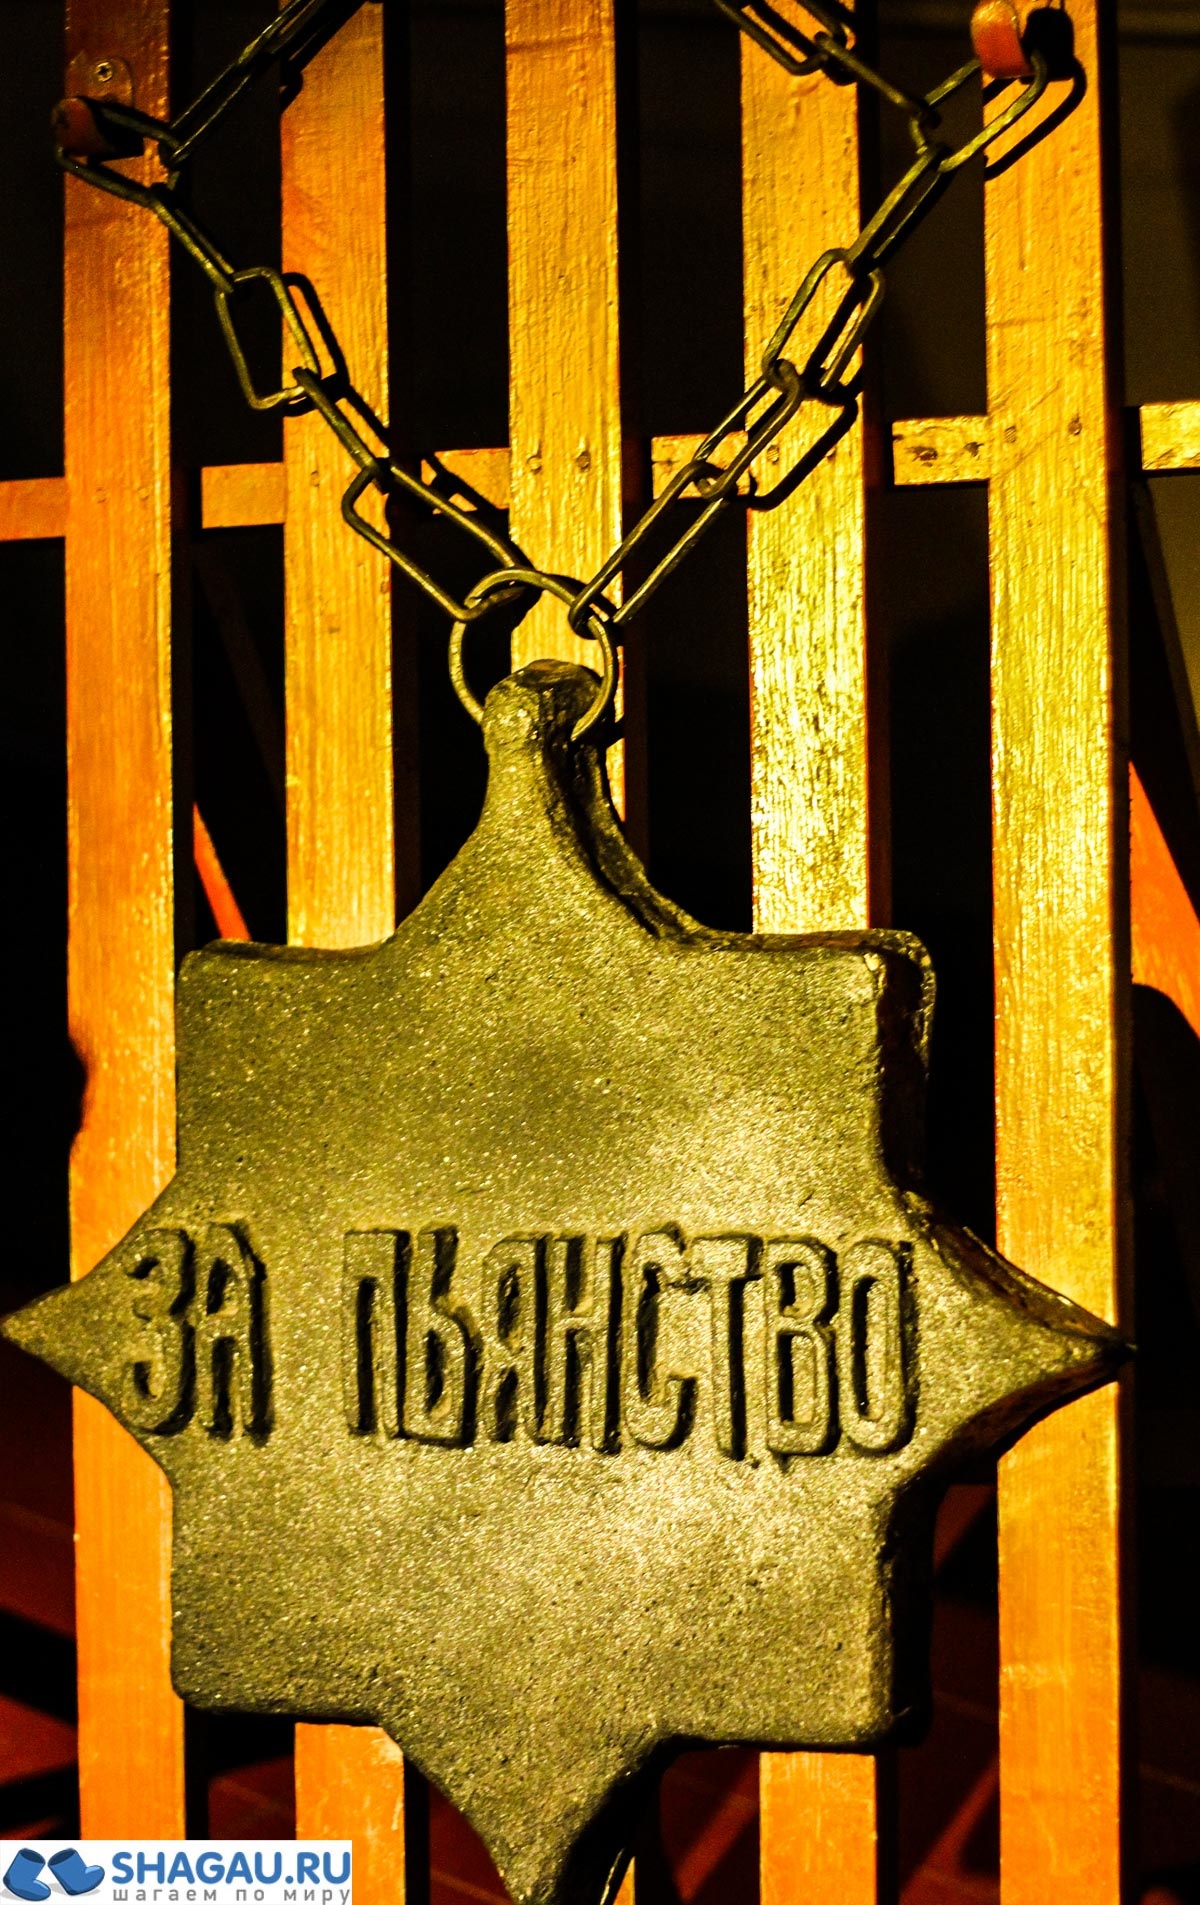 Музей пыток в Петропавловской крепости Санкт-Петербурга